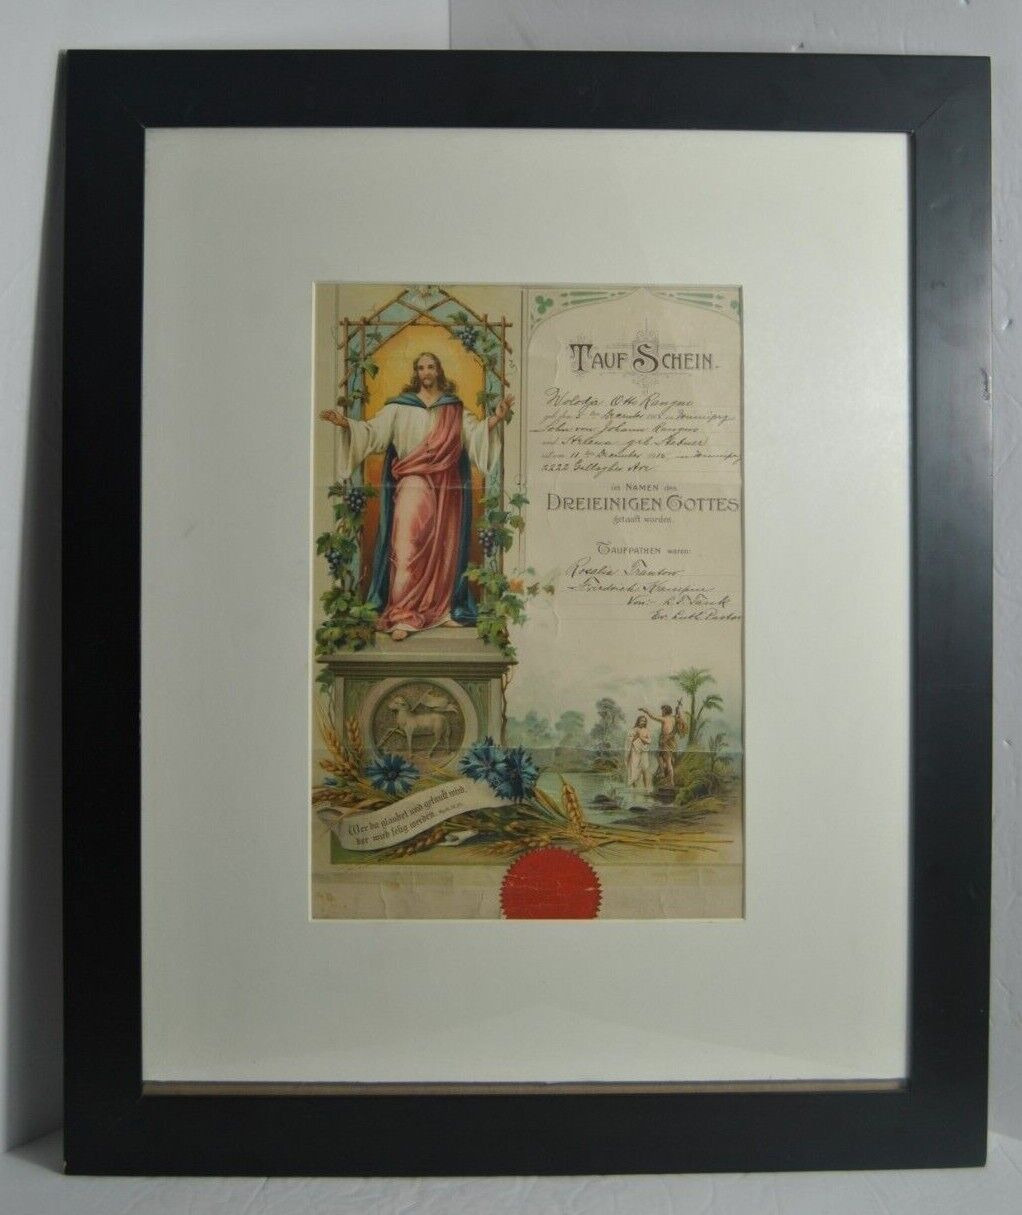 TAUF SCHEIN December 1915 Germany Certificate of Baptism Framed